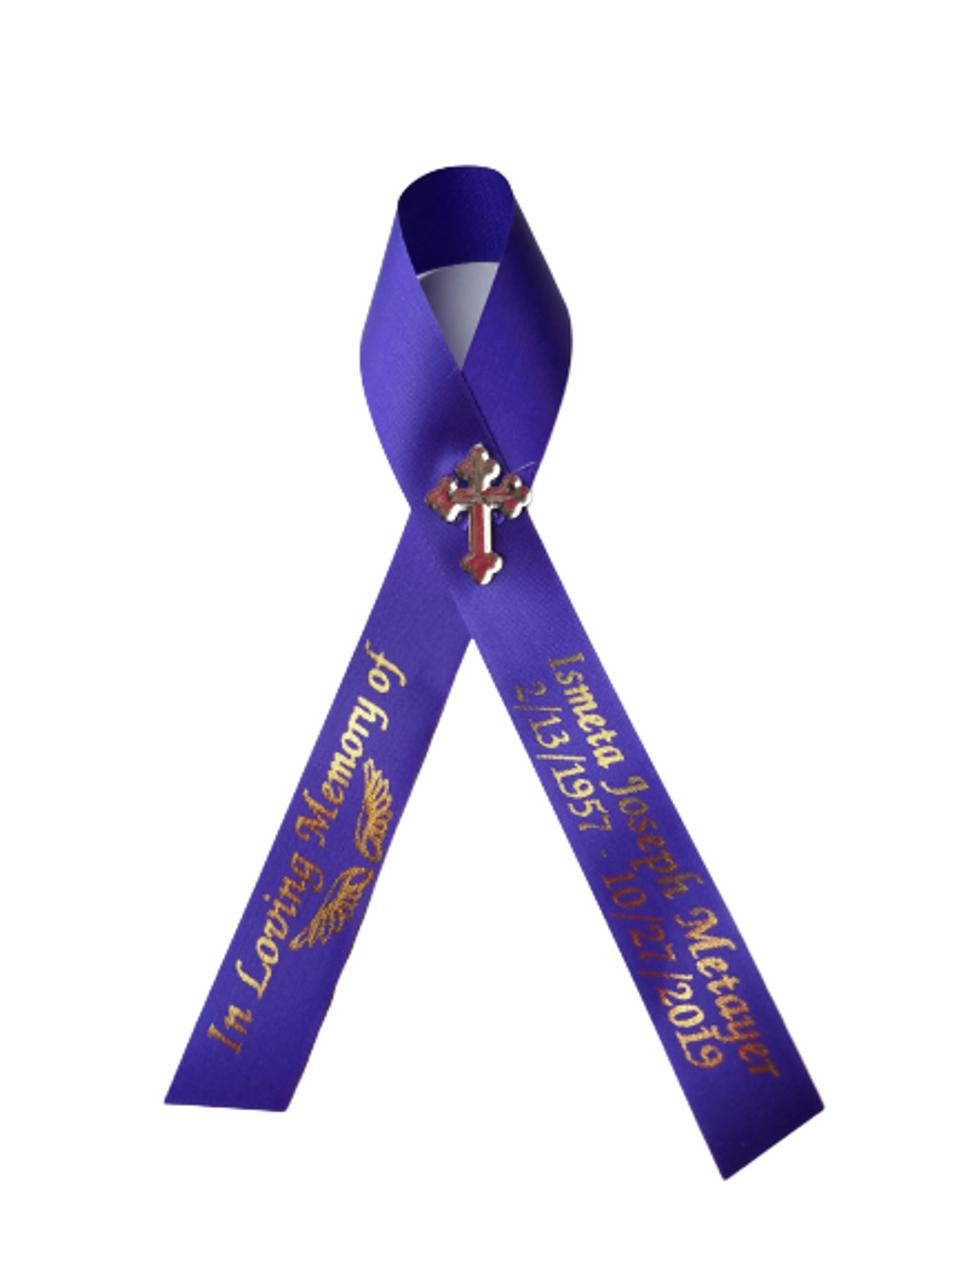 Personalized Memorial Ribbons